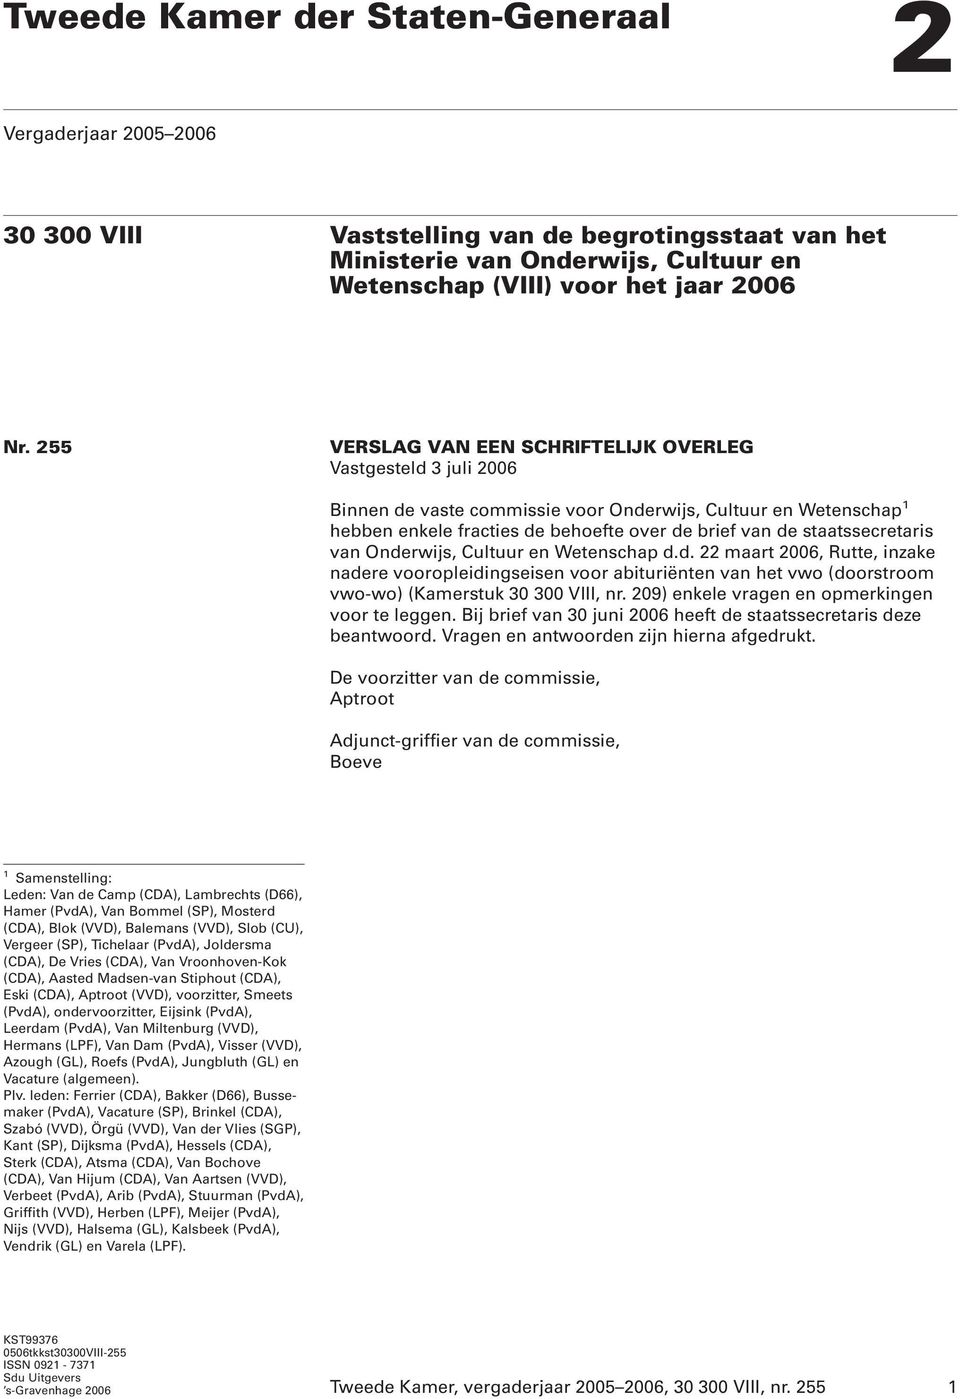 staatssecretaris van Onderwijs, Cultuur en Wetenschap d.d. 22 maart 2006, Rutte, inzake nadere vooropleidingseisen voor abituriënten van het vwo (doorstroom vwo-wo) (Kamerstuk 30 300 VIII, nr.